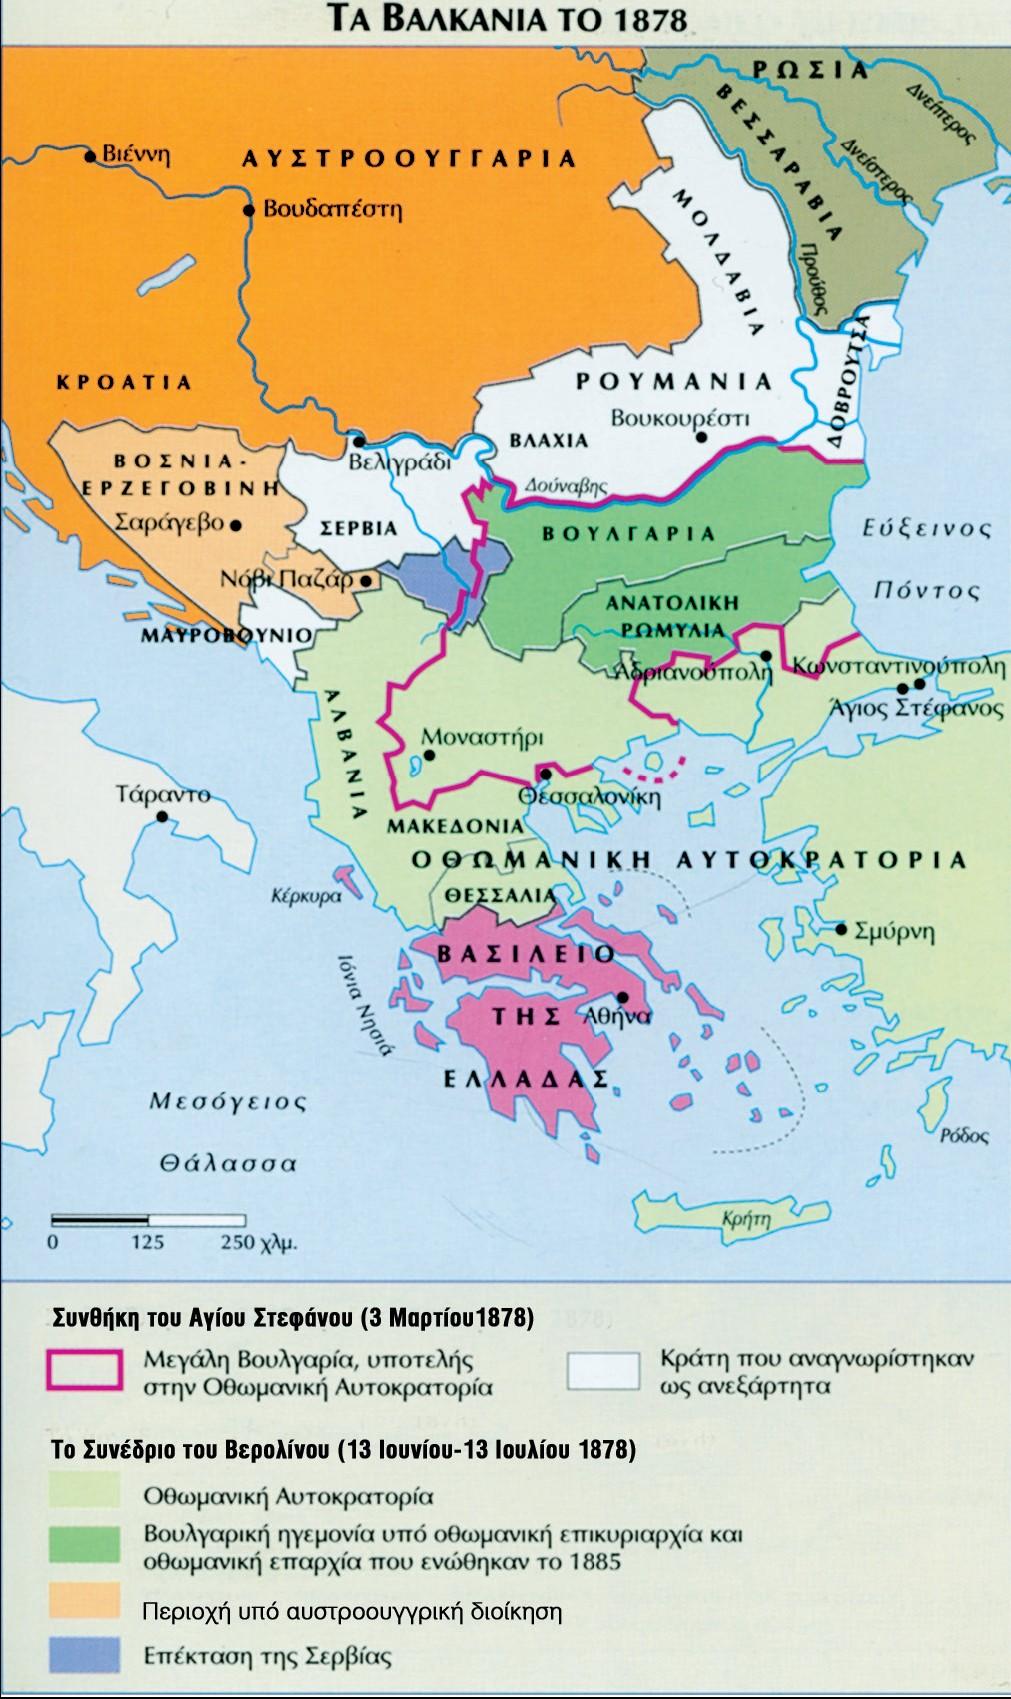 7 Εθνικό κίνημα ενάντια στους Οθωμανούς κυριάρχους στους Έλληνες Παρίστριους ηγεμόνες (εκπρόσωποι της Πύλης) 1878: εξασφάλιση της Ανεξαρτησίας τους (συνθήκη Αγ. Στεφάνου). 5.